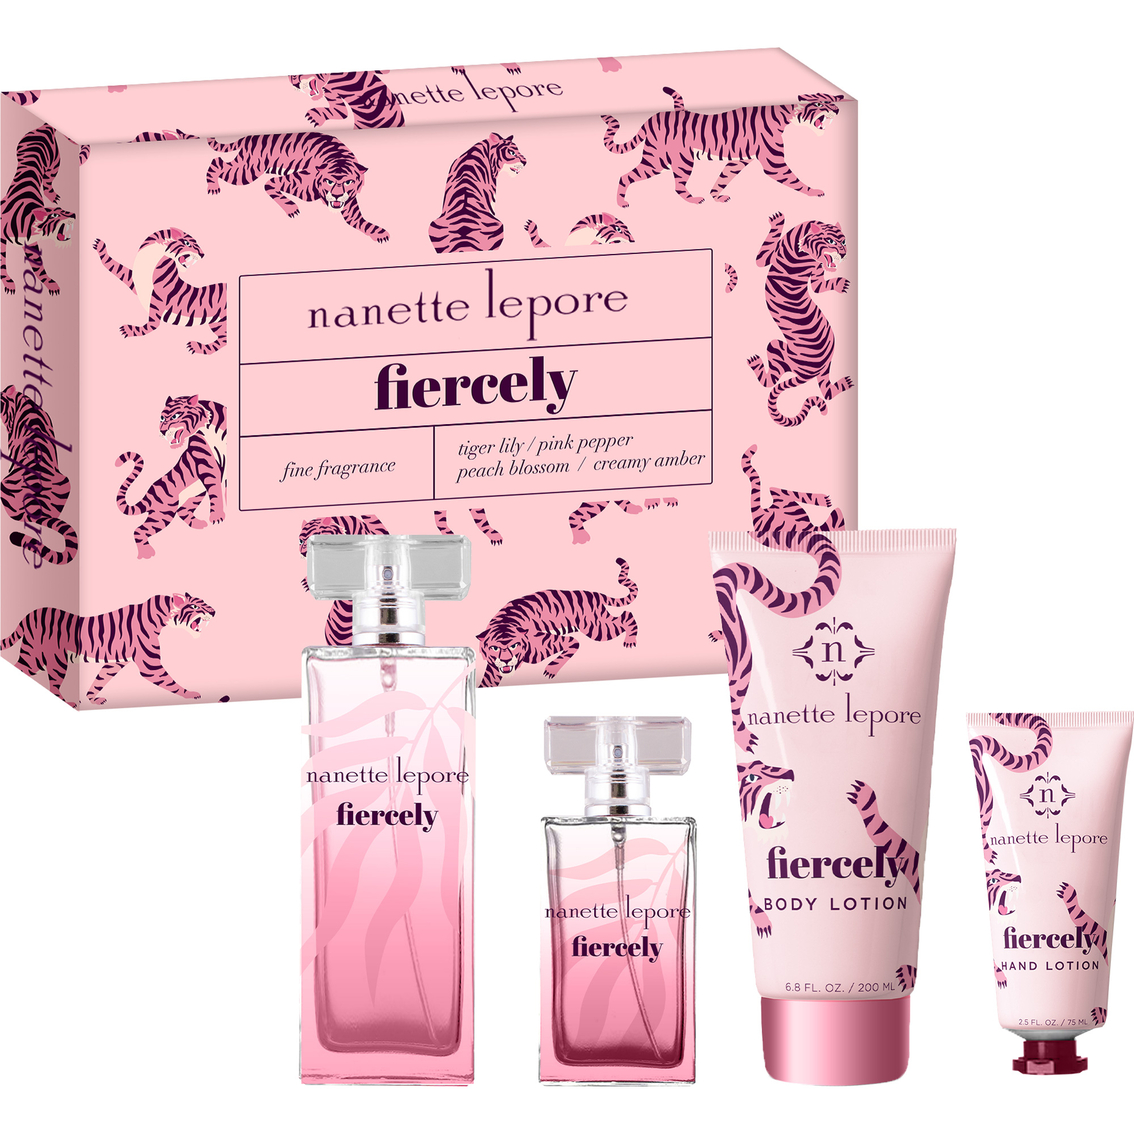 Victoria's Secret Sexy Little Things Tease Eau De Parfum Spray 1.7 Oz., Women's Fragrances, Beauty & Health